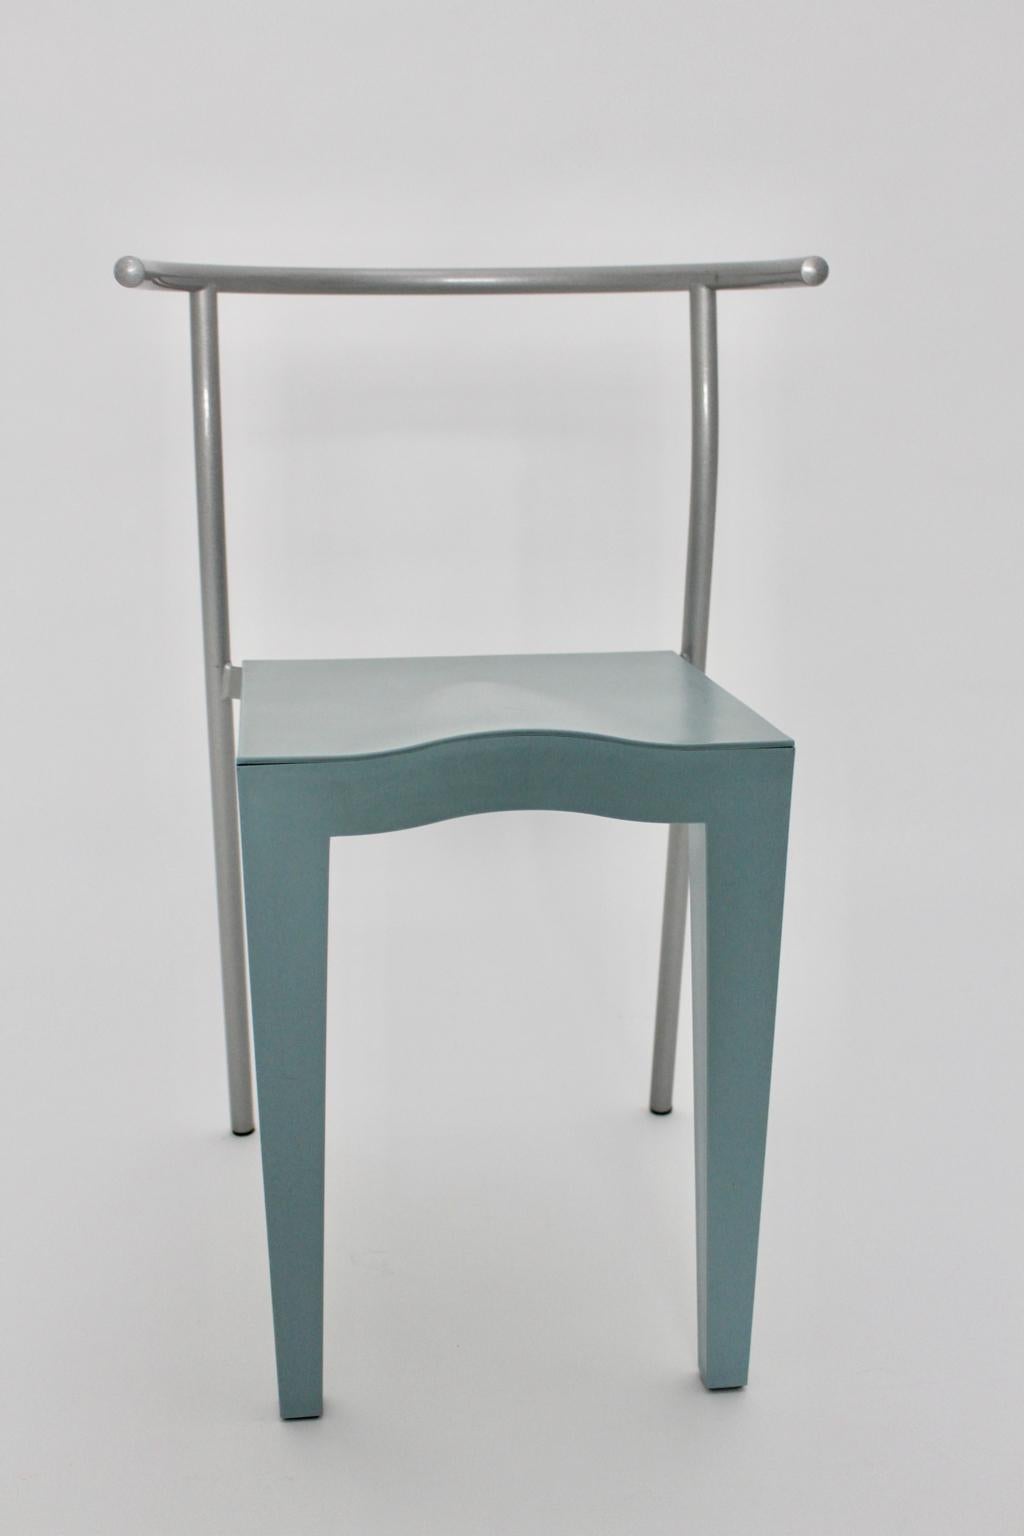 La chaise vintage postmoderne bleu clair a été conçue par Philippe Starck dans les années 1980 et exécutée par Kartell Italie.
La chaise présente des pieds en tube d'acier laqué gris et l'assise et le dossier sont en propylène bleu clair.
Très bon